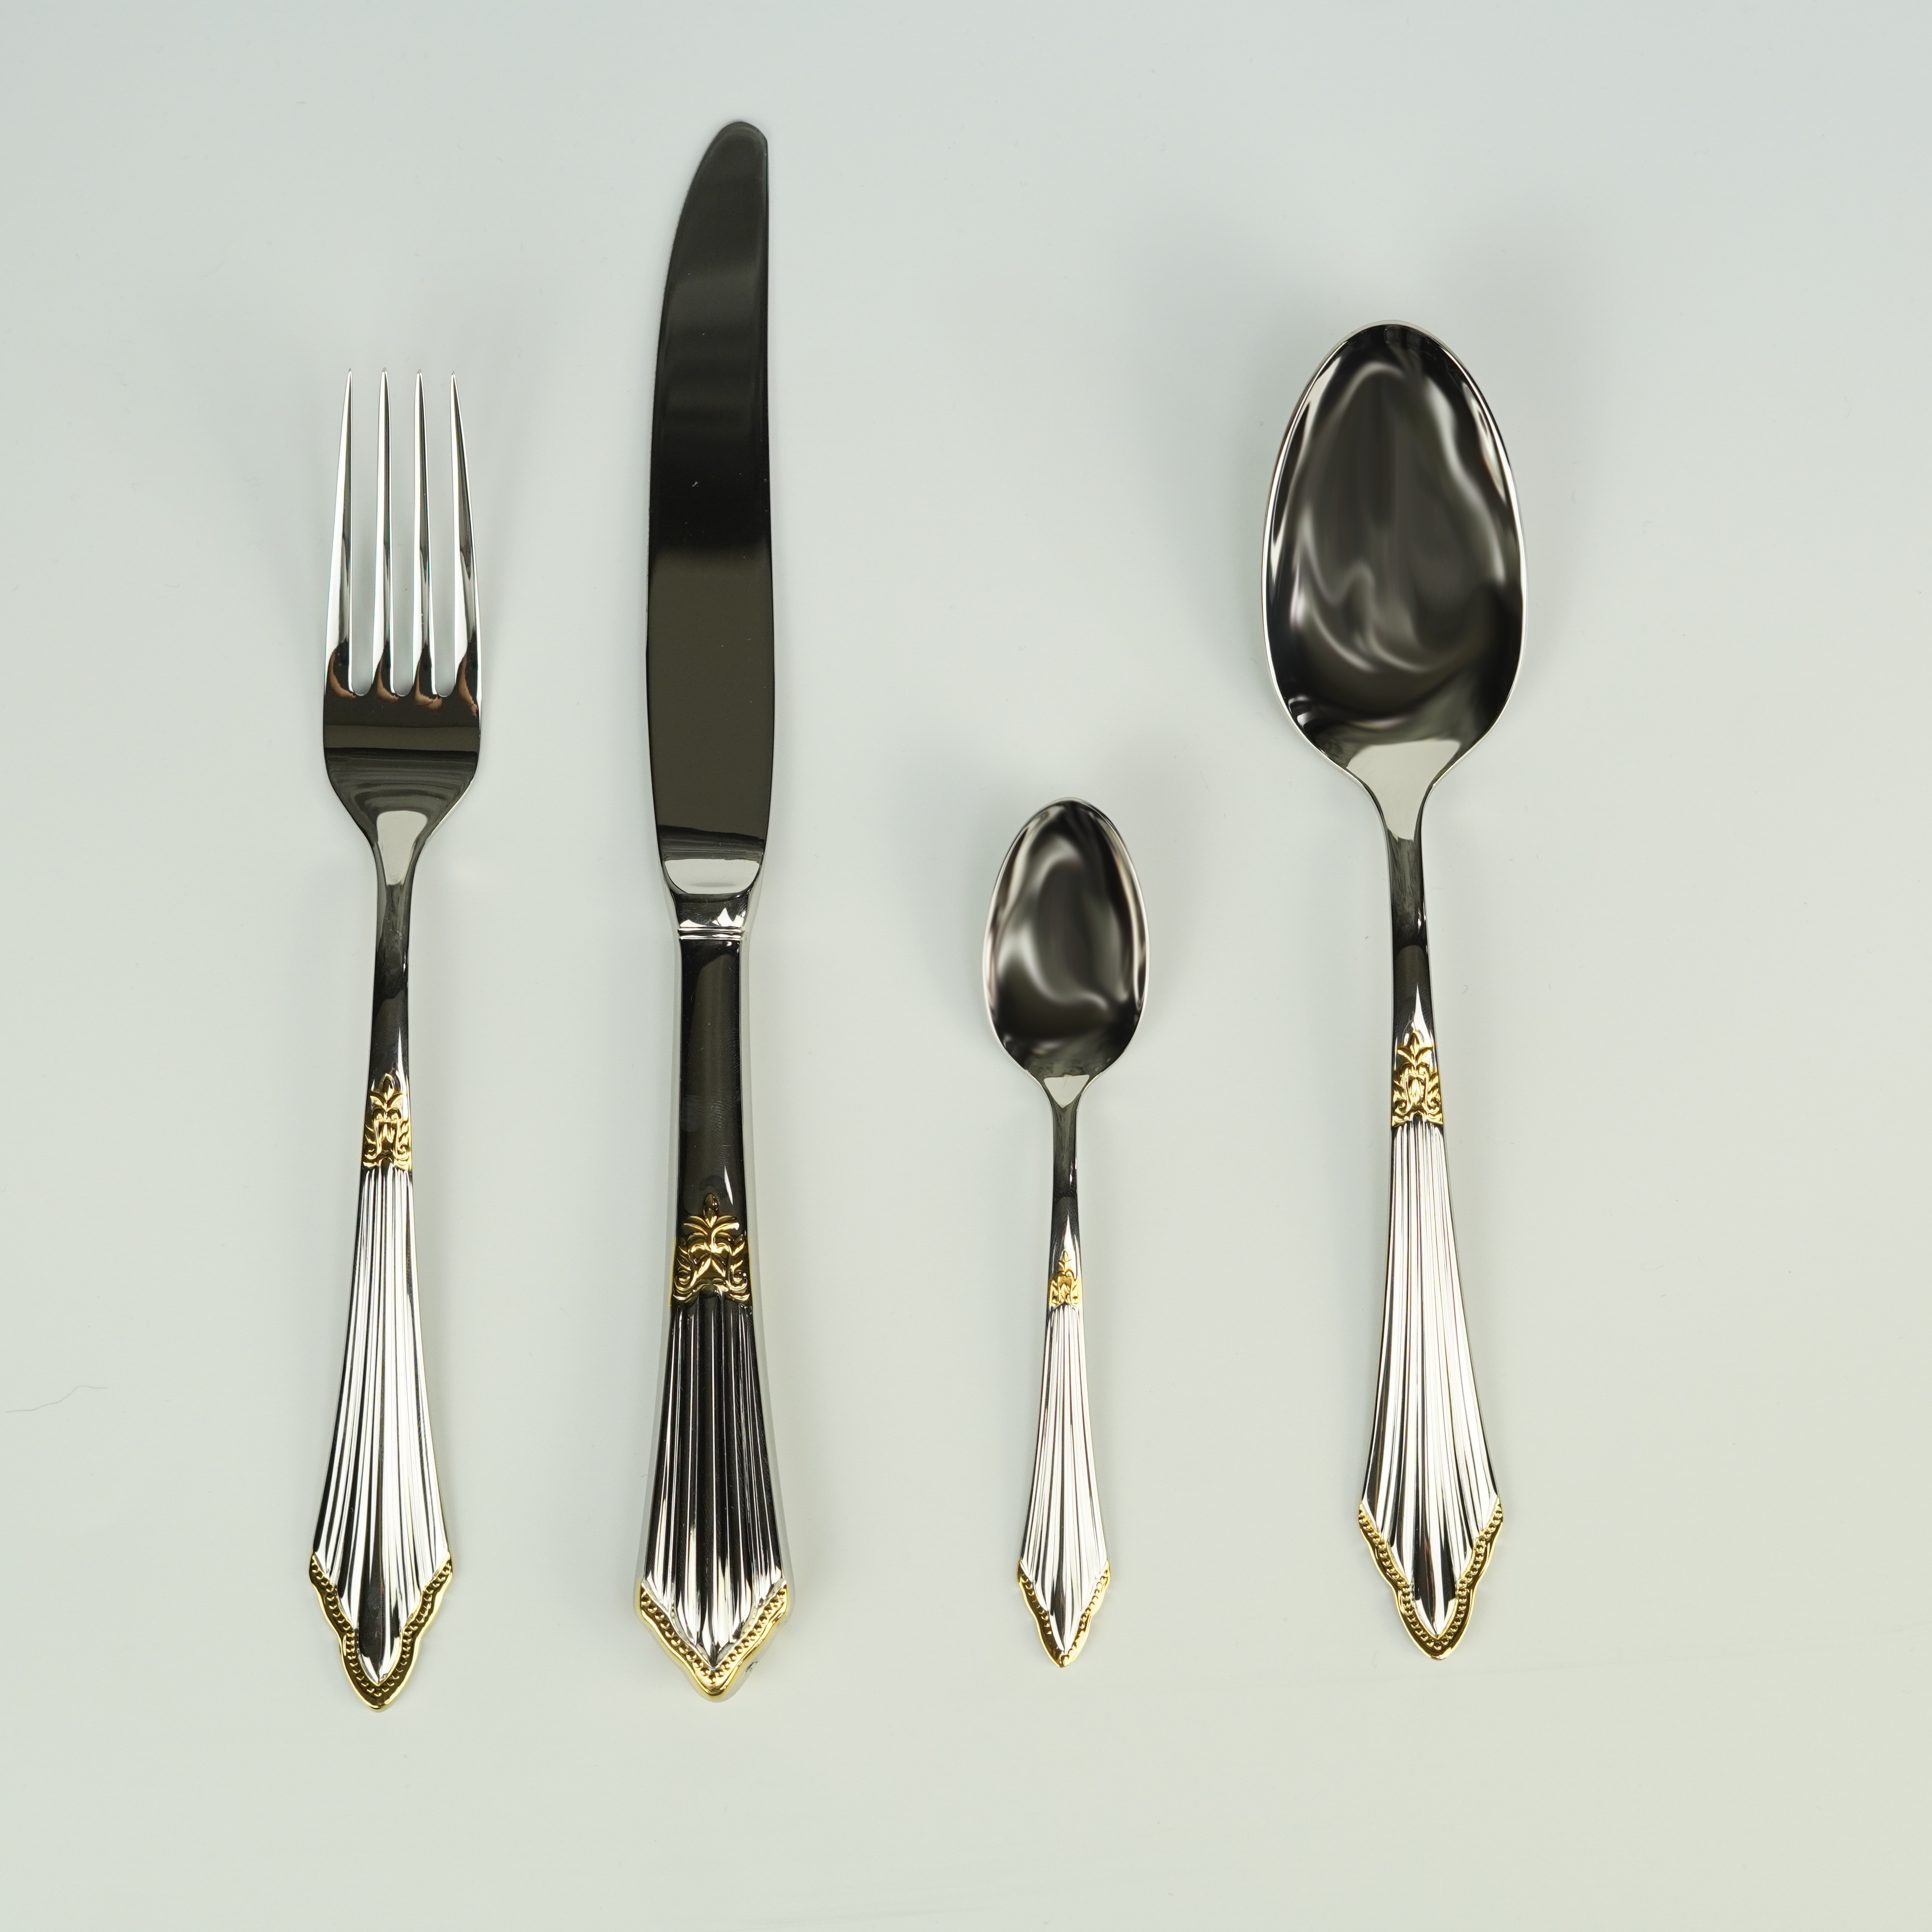 Art Deco Style Silver/Gold Fan Design Cutlery